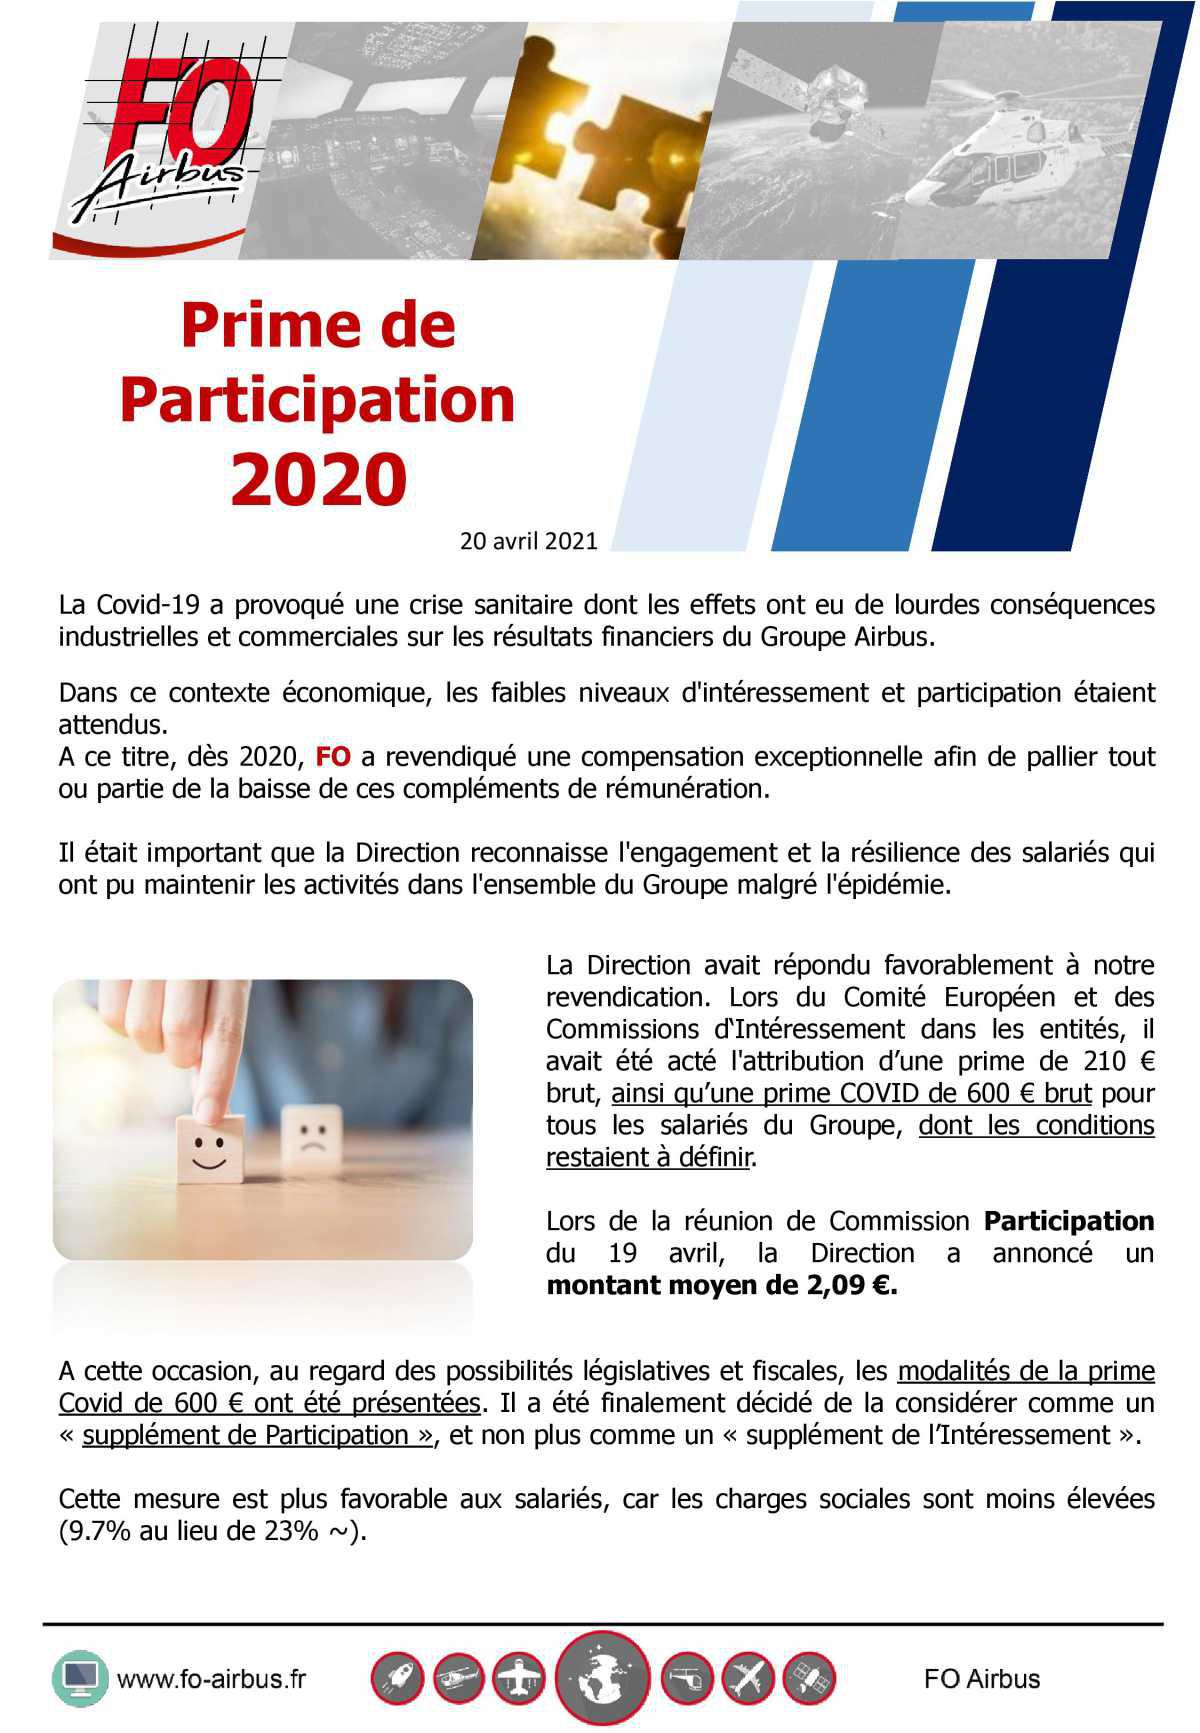 Prime de participation 2020